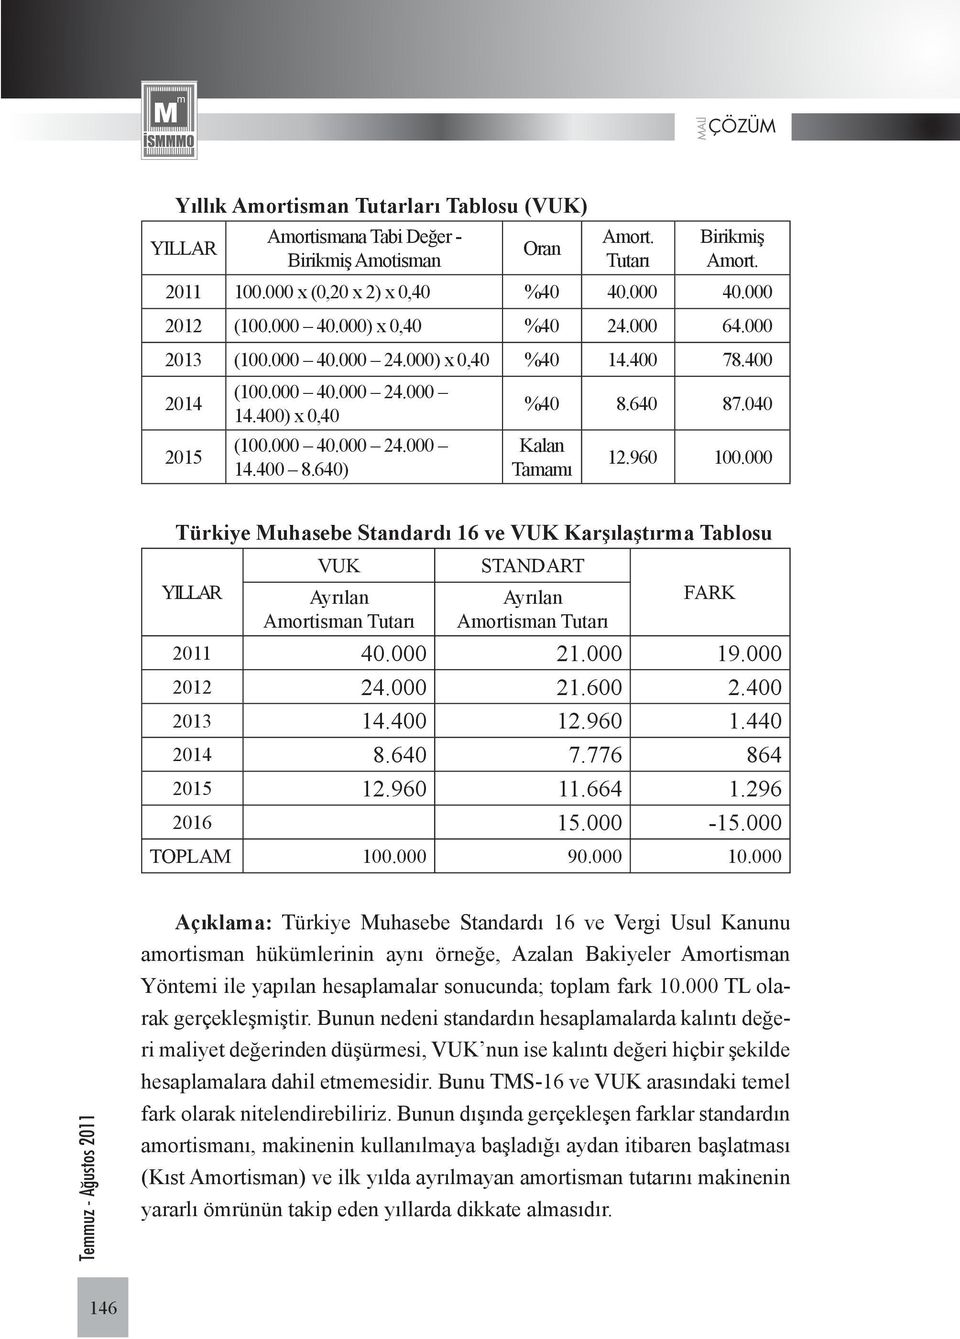 000 Türkiye Muhasebe Standardı 16 ve VUK Karşılaştırma Tablosu YILLAR VUK Ayrılan Amortisman Tutarı STANDART Ayrılan Amortisman Tutarı FARK 2011 40.000 21.000 19.000 2012 24.000 21.600 2.400 2013 14.